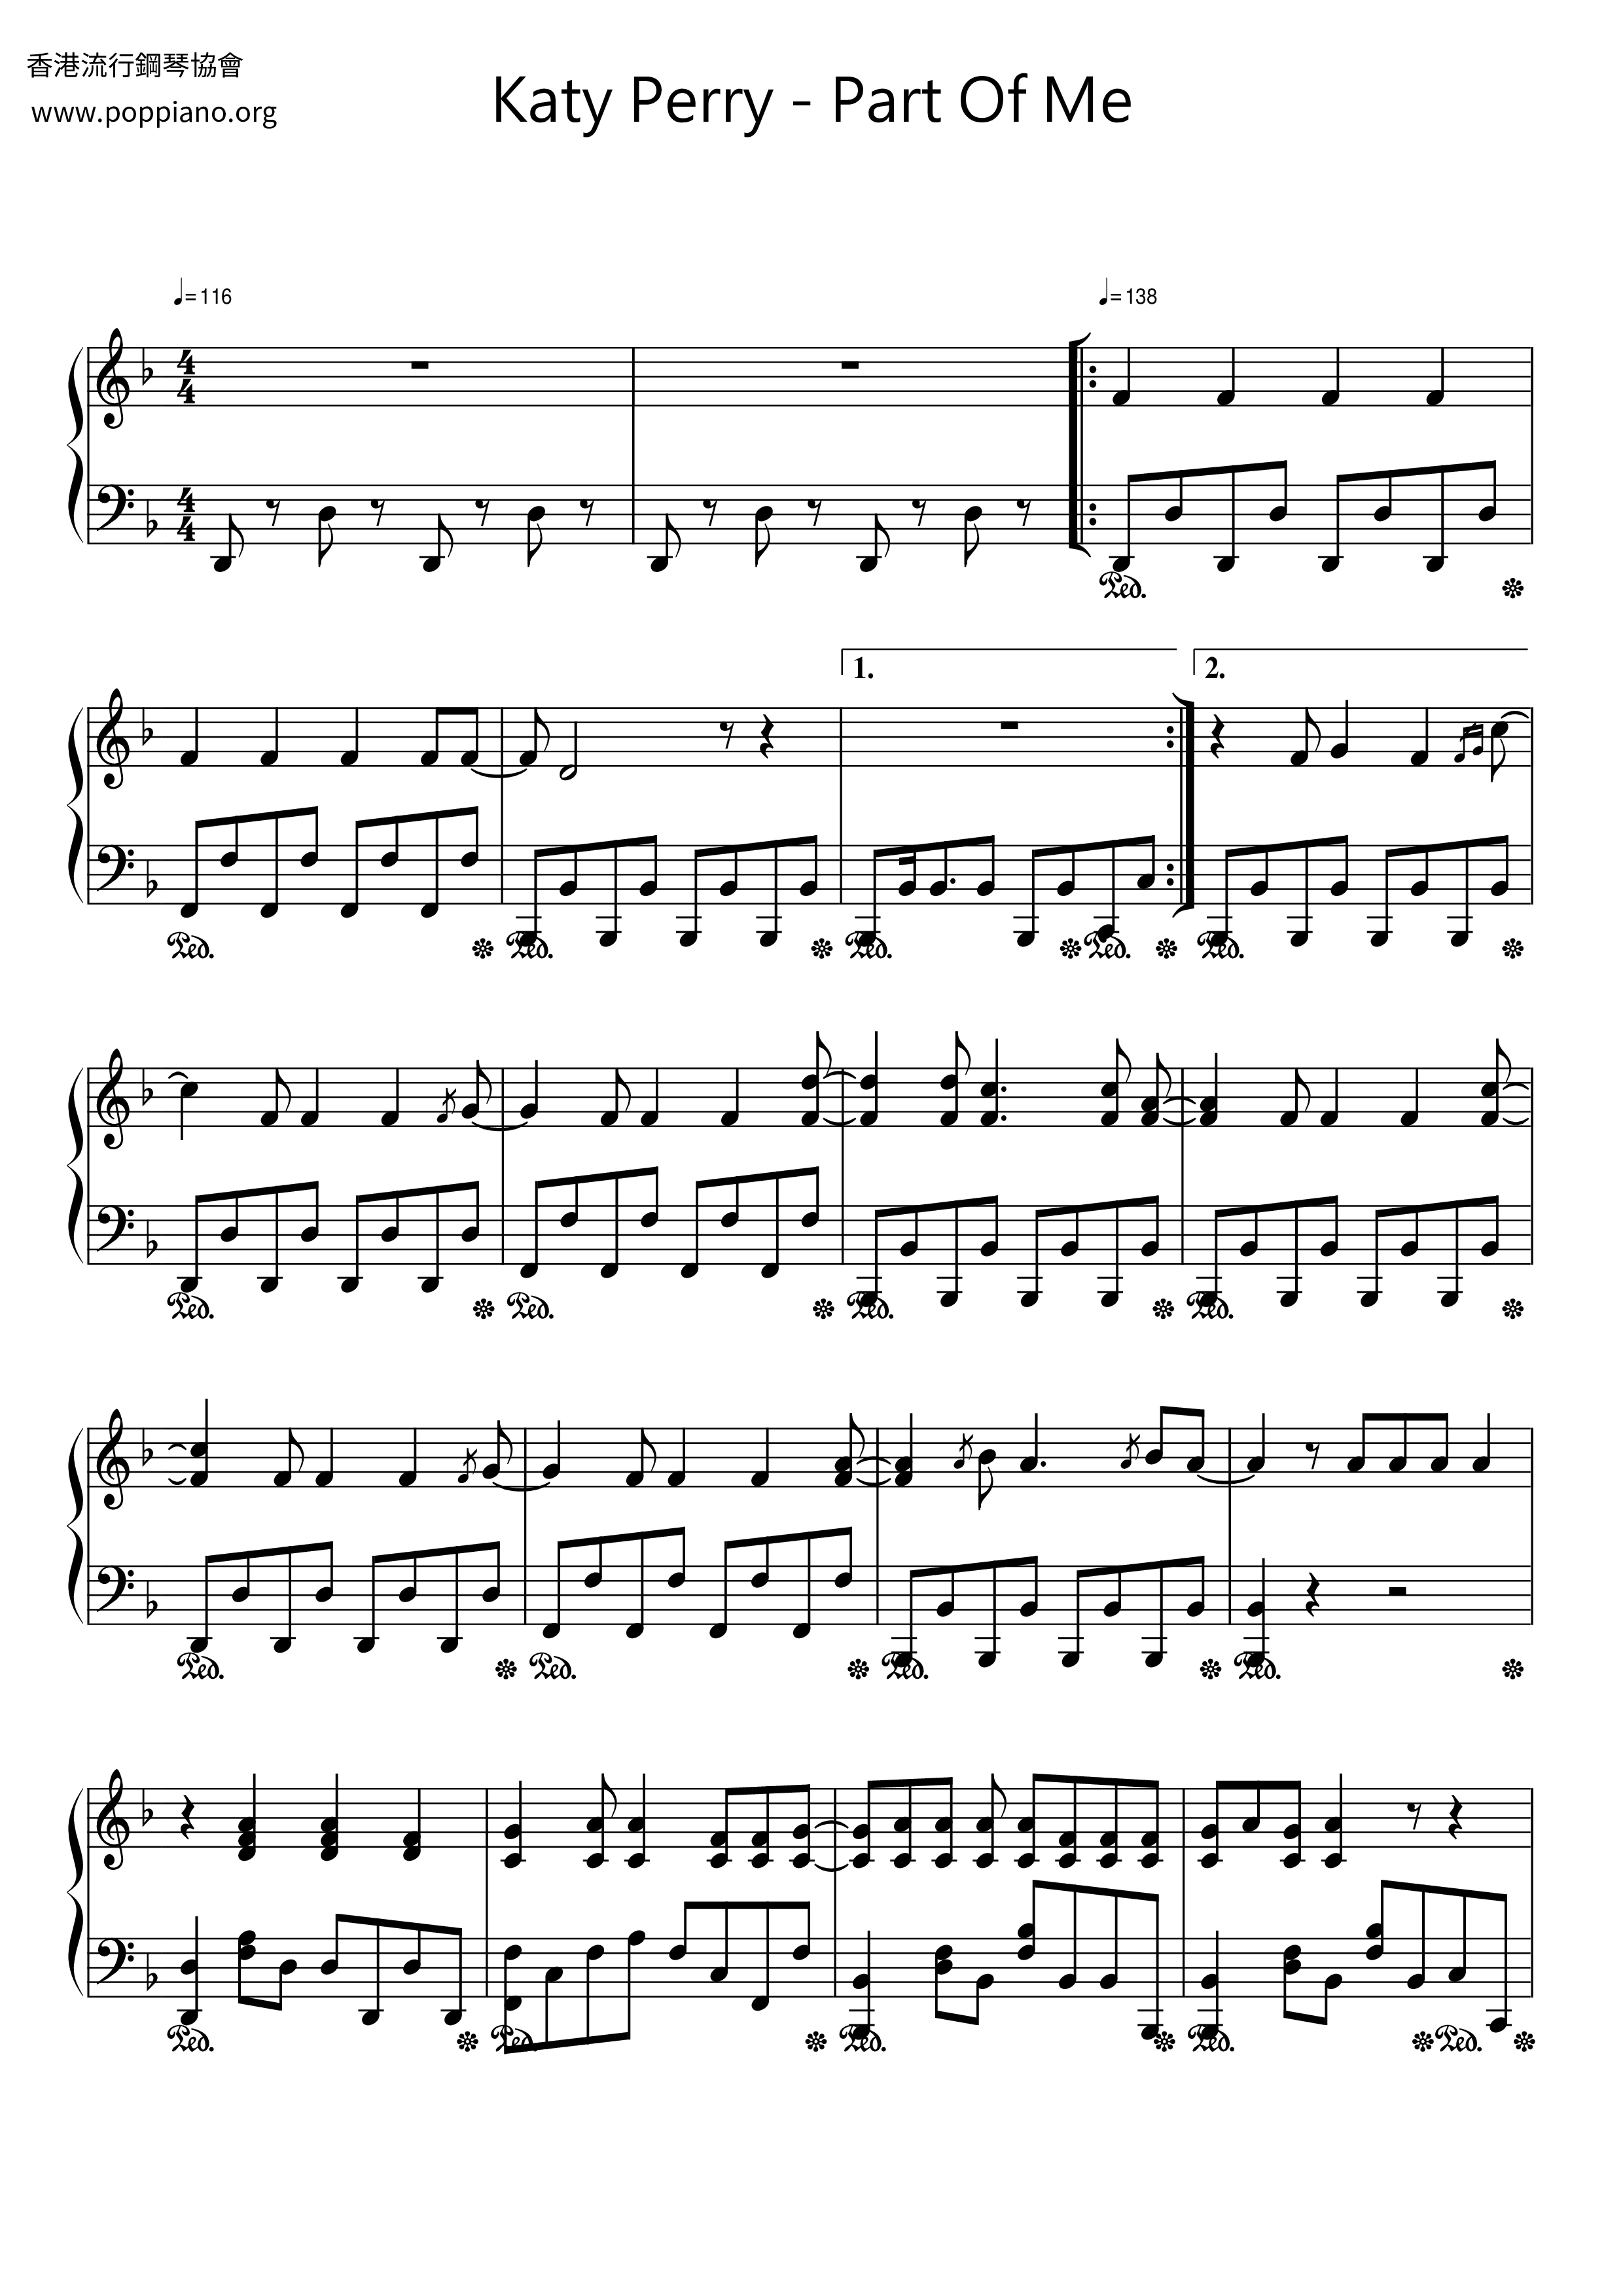 Part Of Meピアノ譜